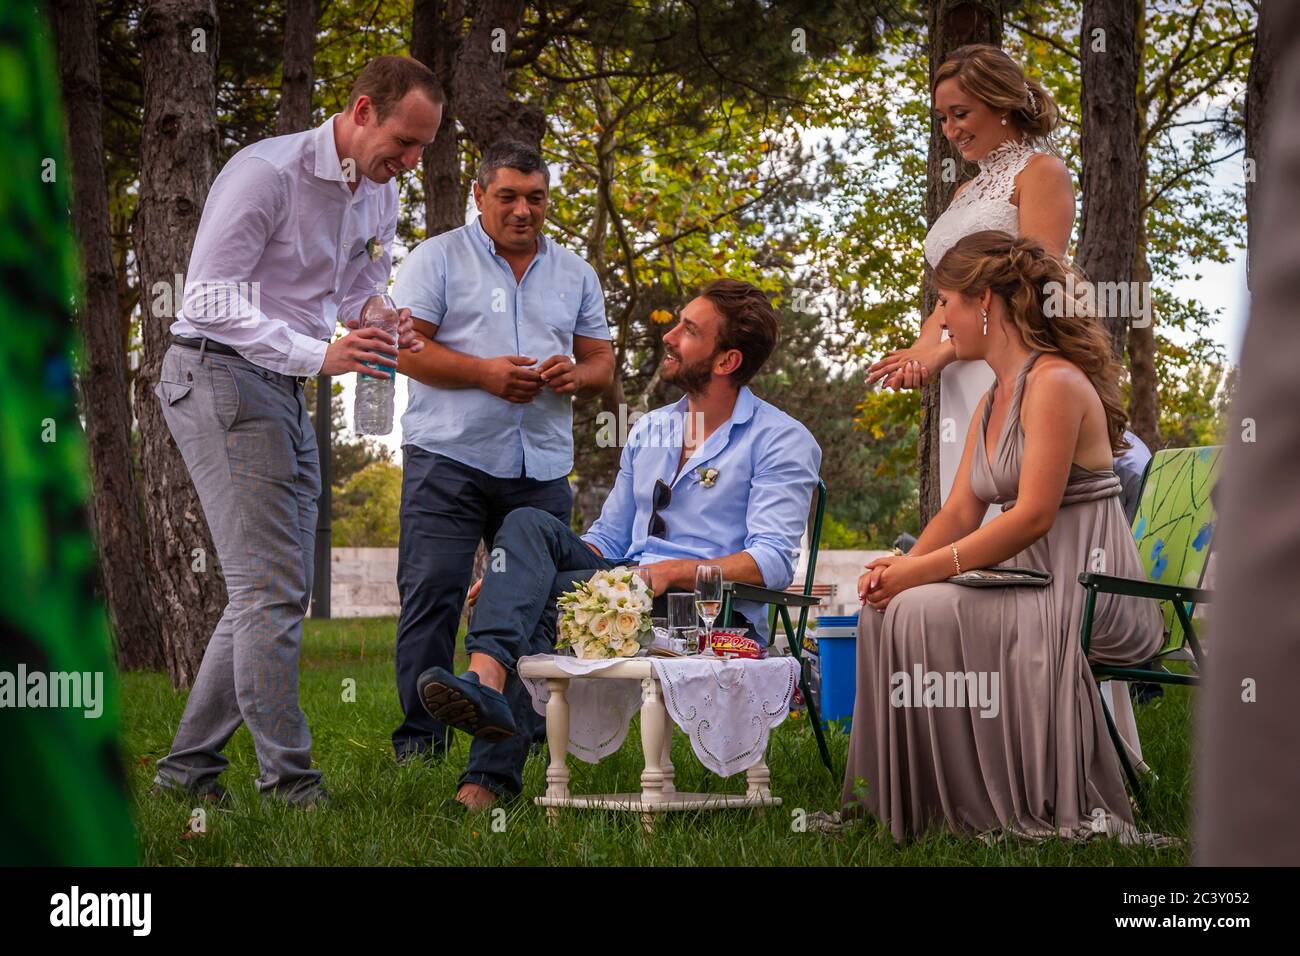 In occasione di un matrimonio bulgaro, i migliori uomini e le cameriere d'onore sono gli ospiti più importanti. La sposa e lo sposo devono servirli durante il giorno del matrimonio Foto Stock